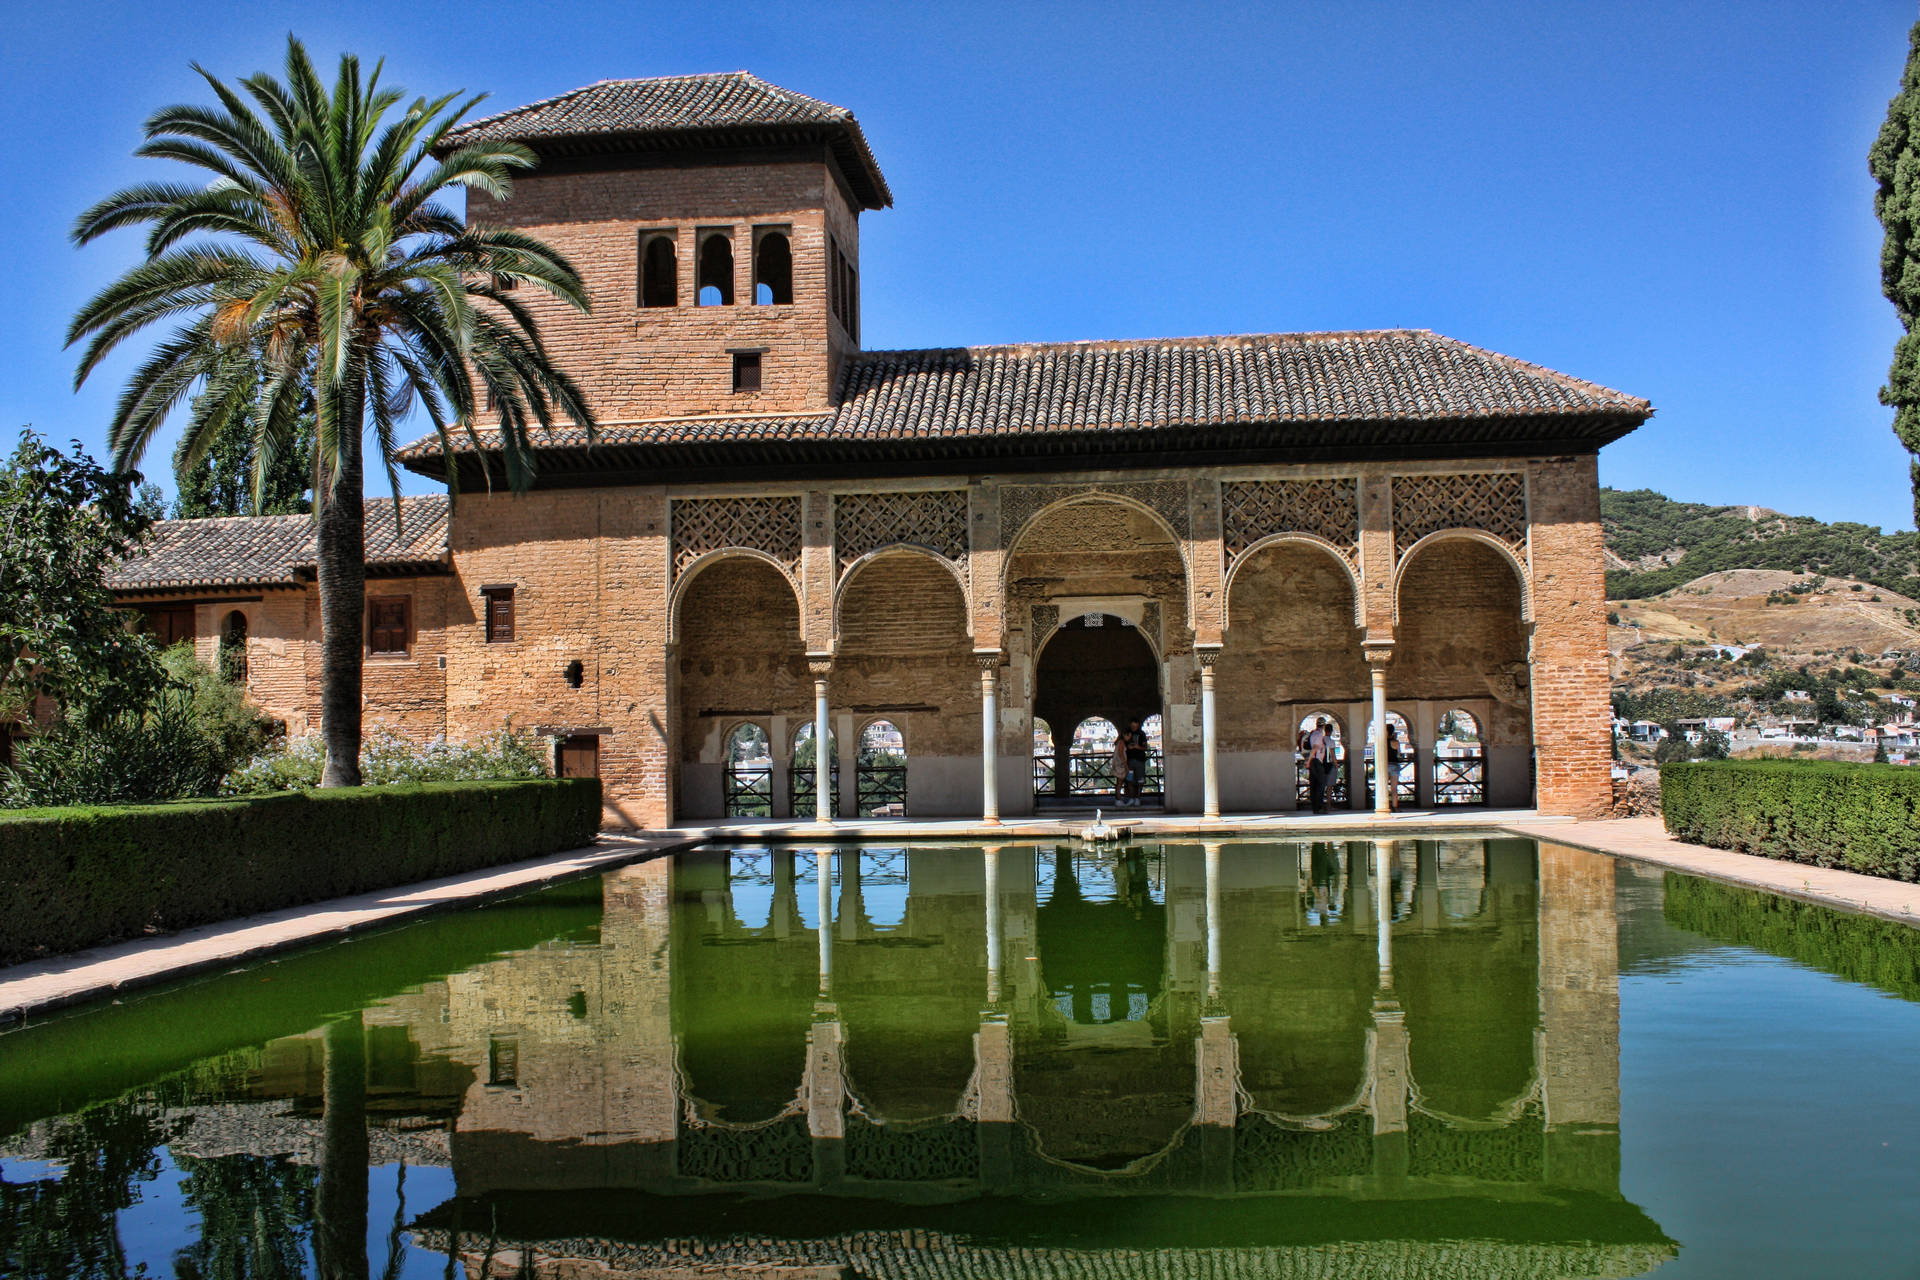 Alhambragranada El Partal È Una Bellissima Immagine Per Sfondo Del Computer O Del Cellulare. Sfondo